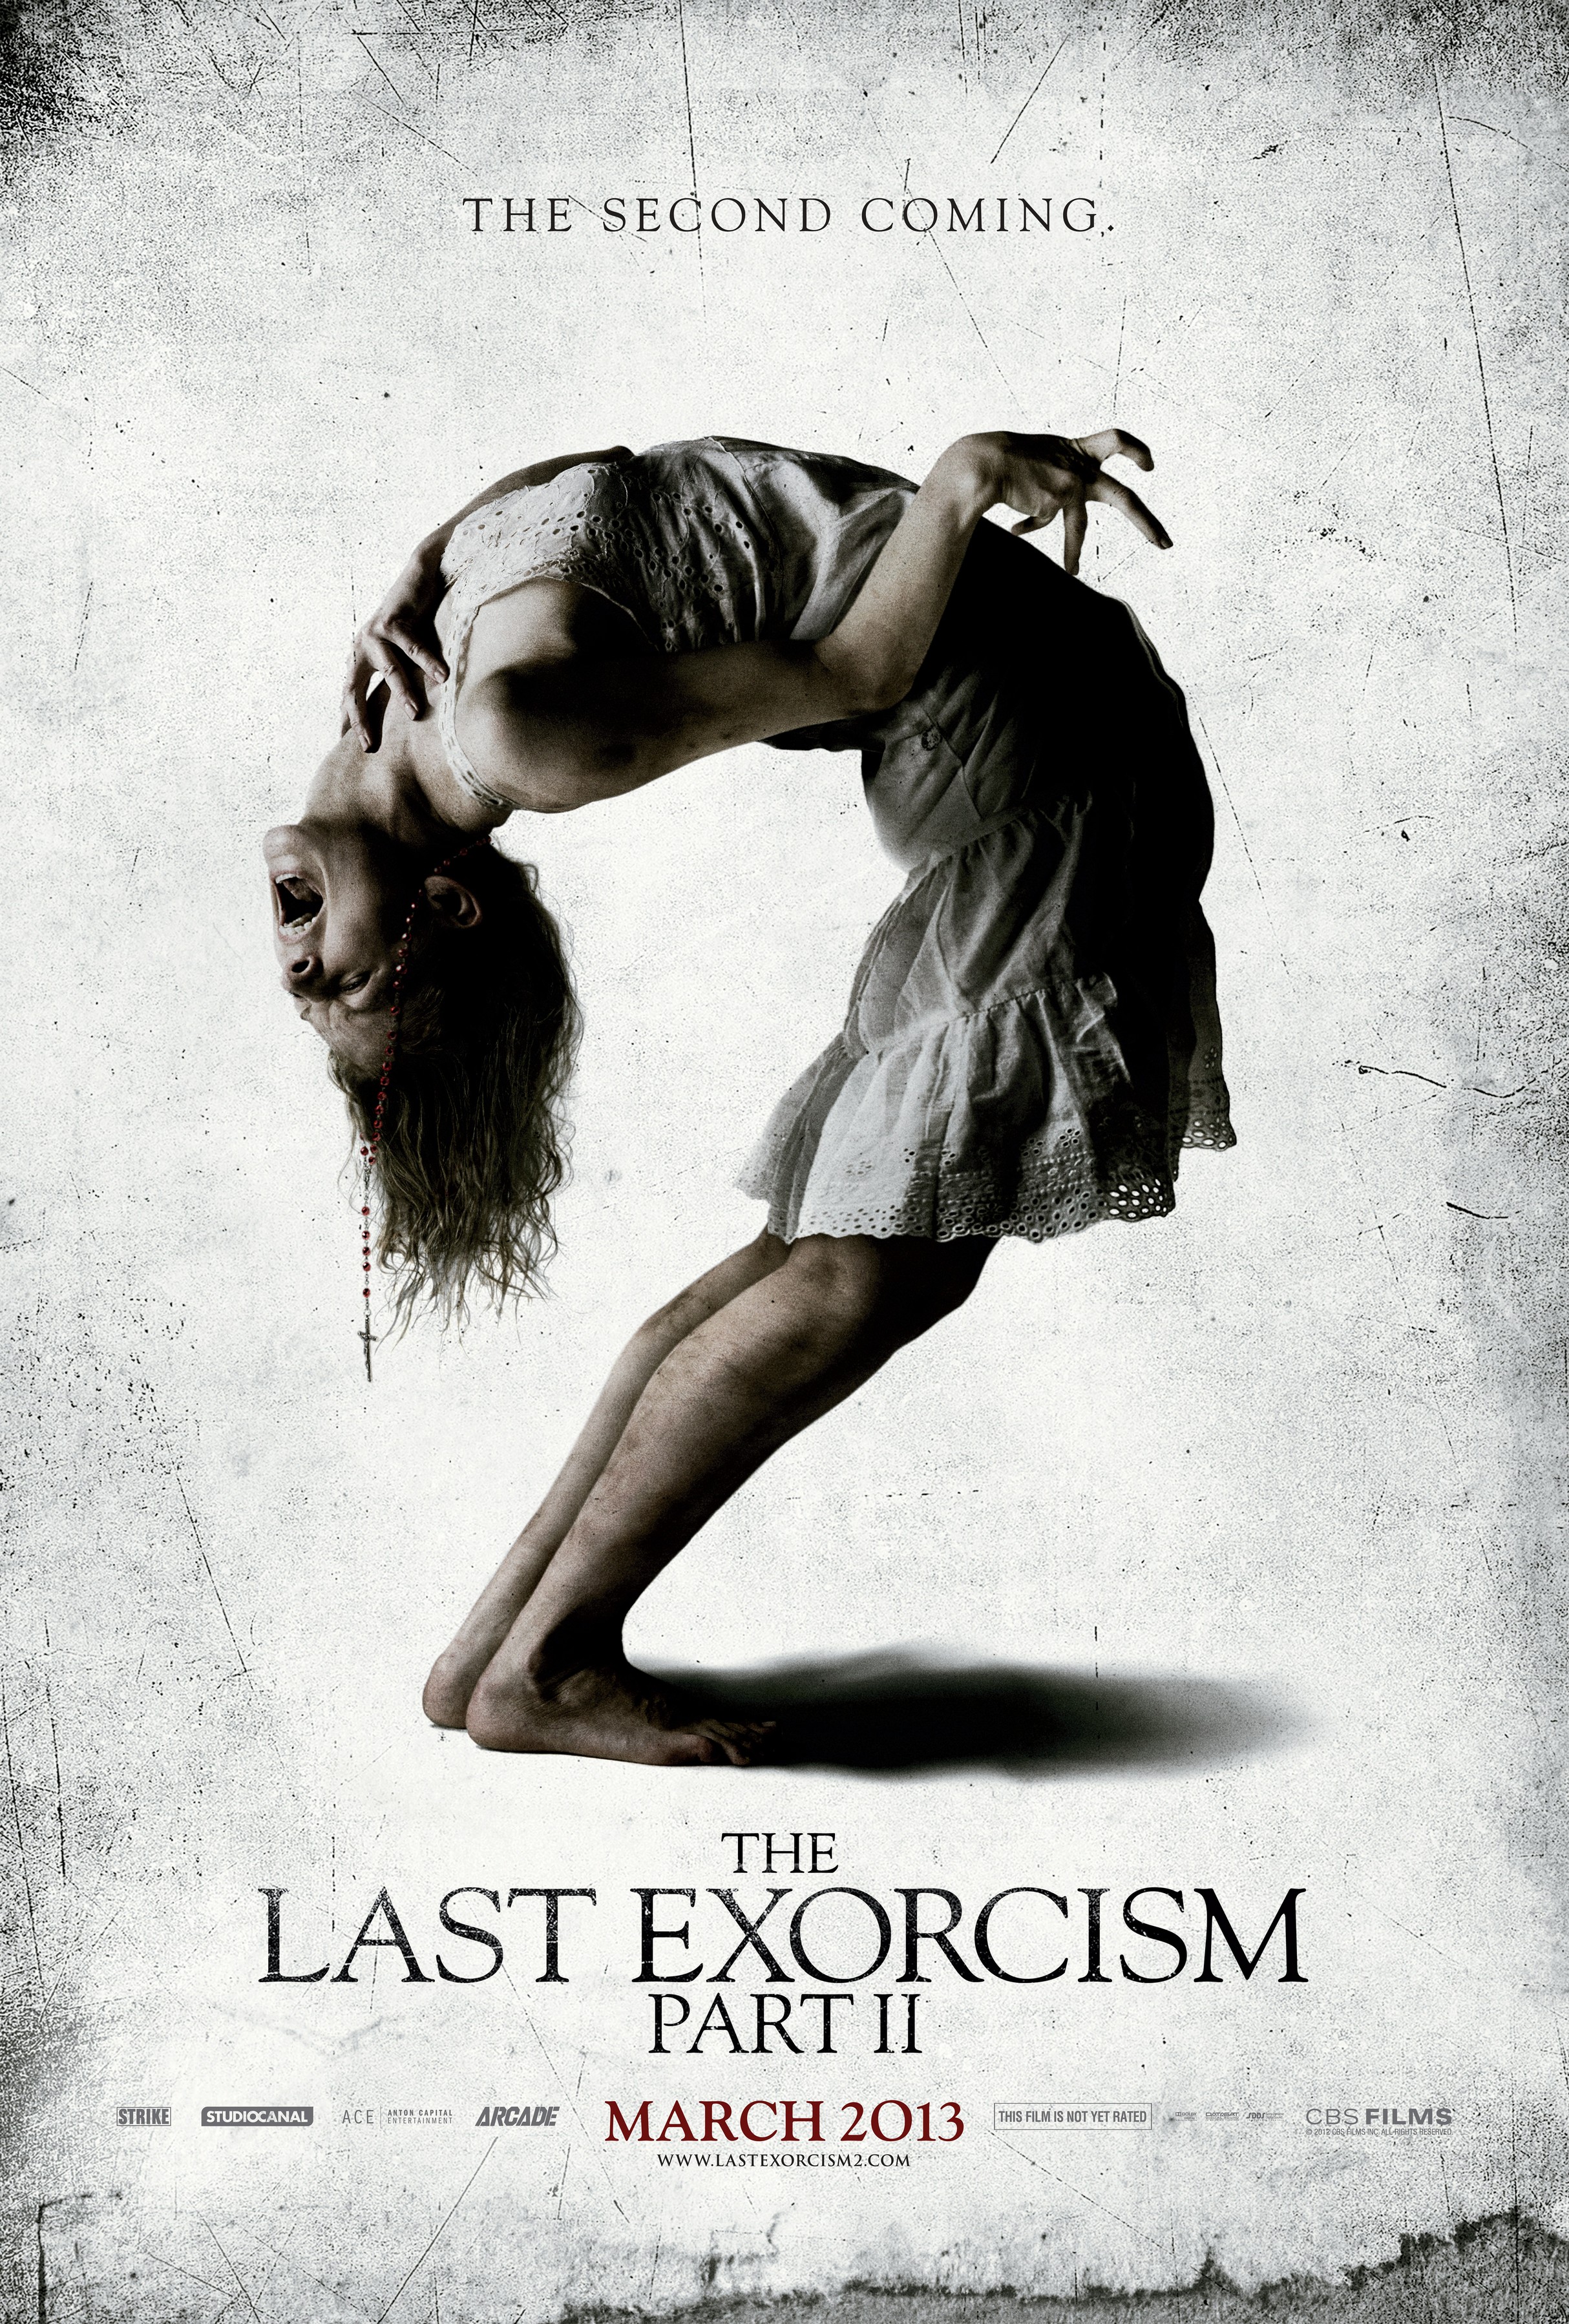 View Trailer: The Last Exorcism Part 2